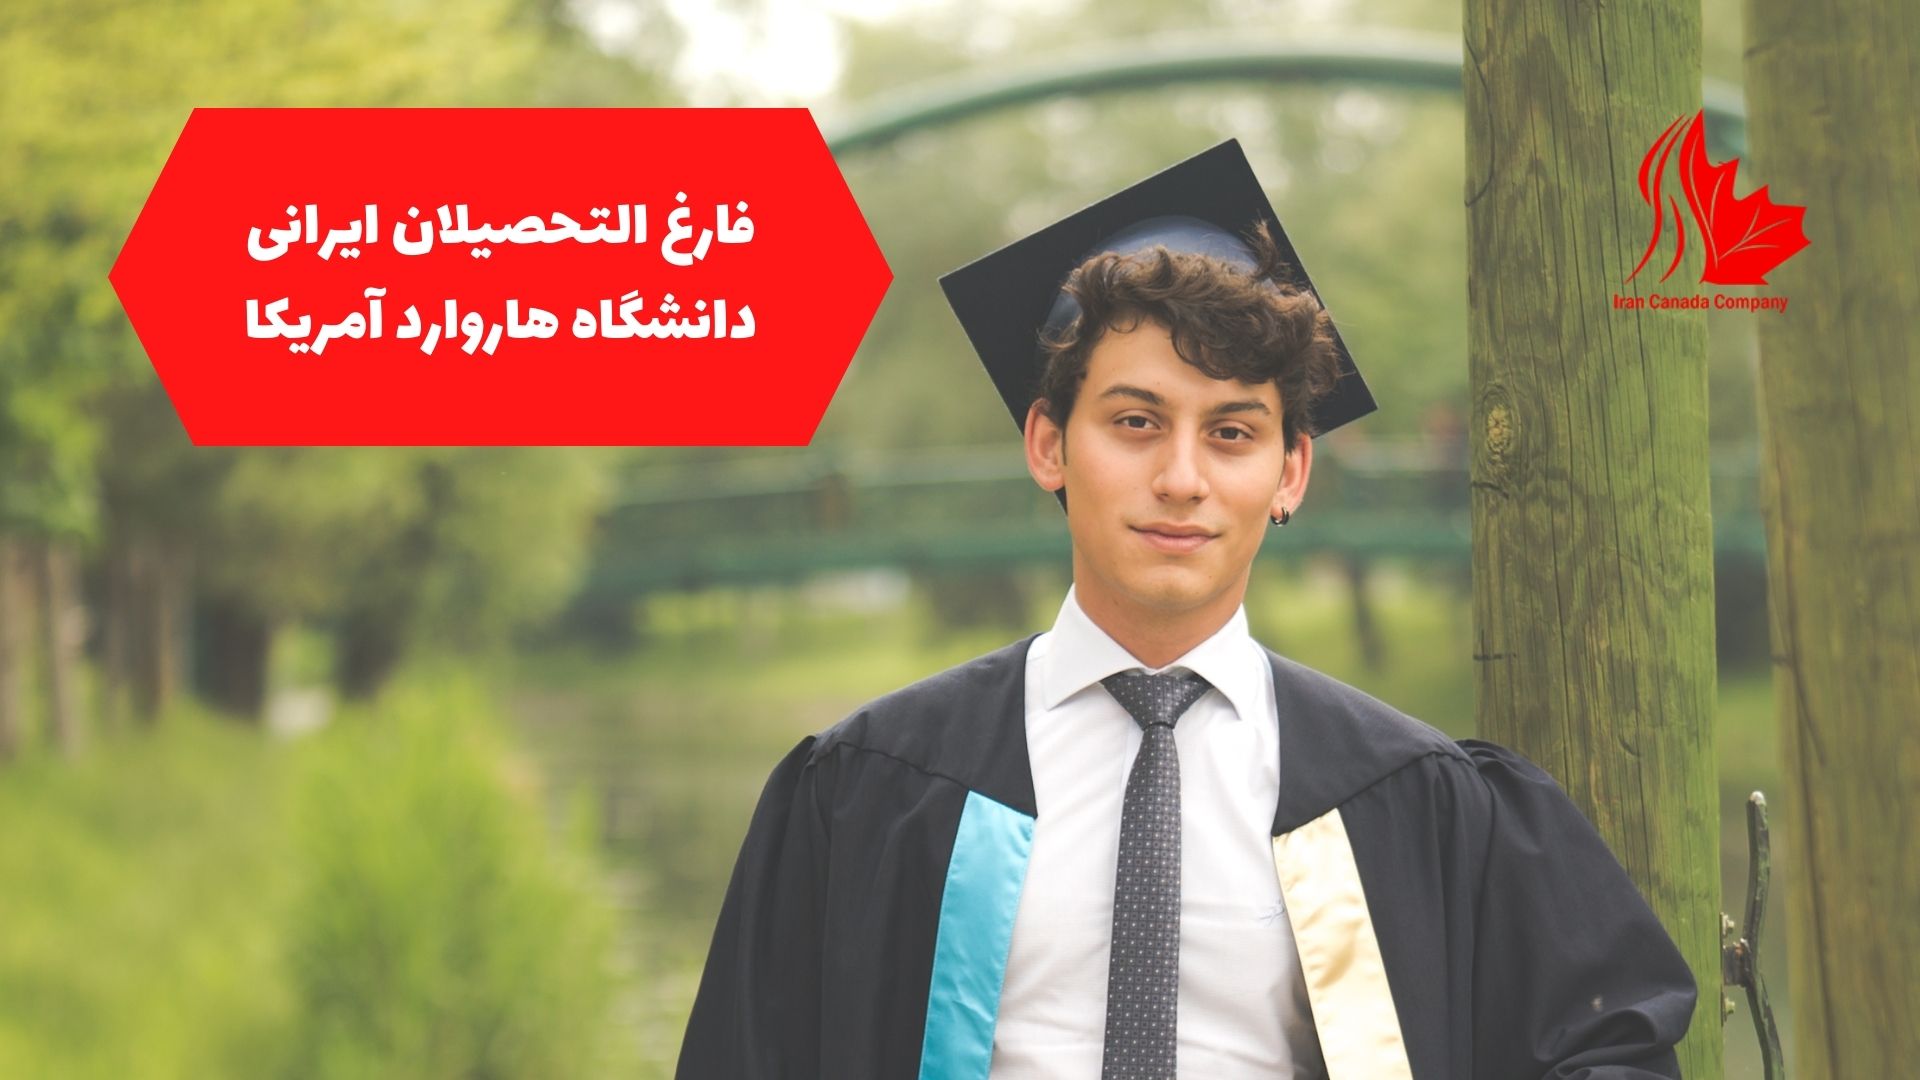 فارغ التحصیلان ایرانی دانشگاه هاروارد آمریکا